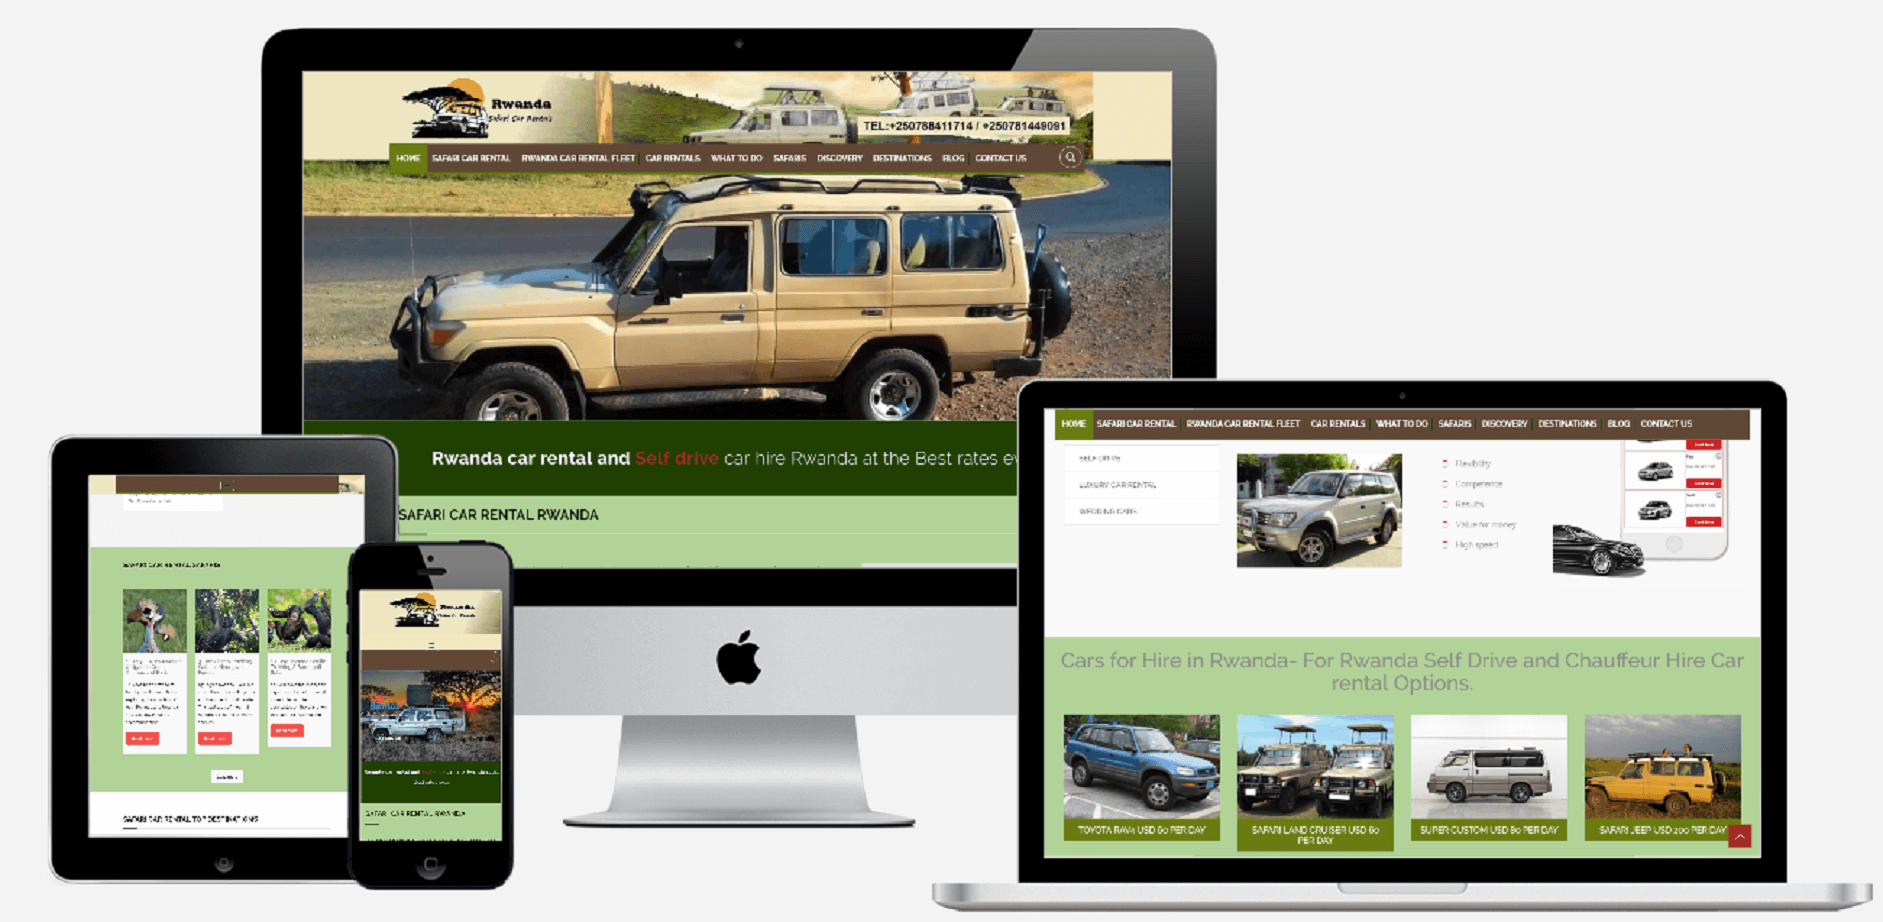 safari-car-rental-rwanda